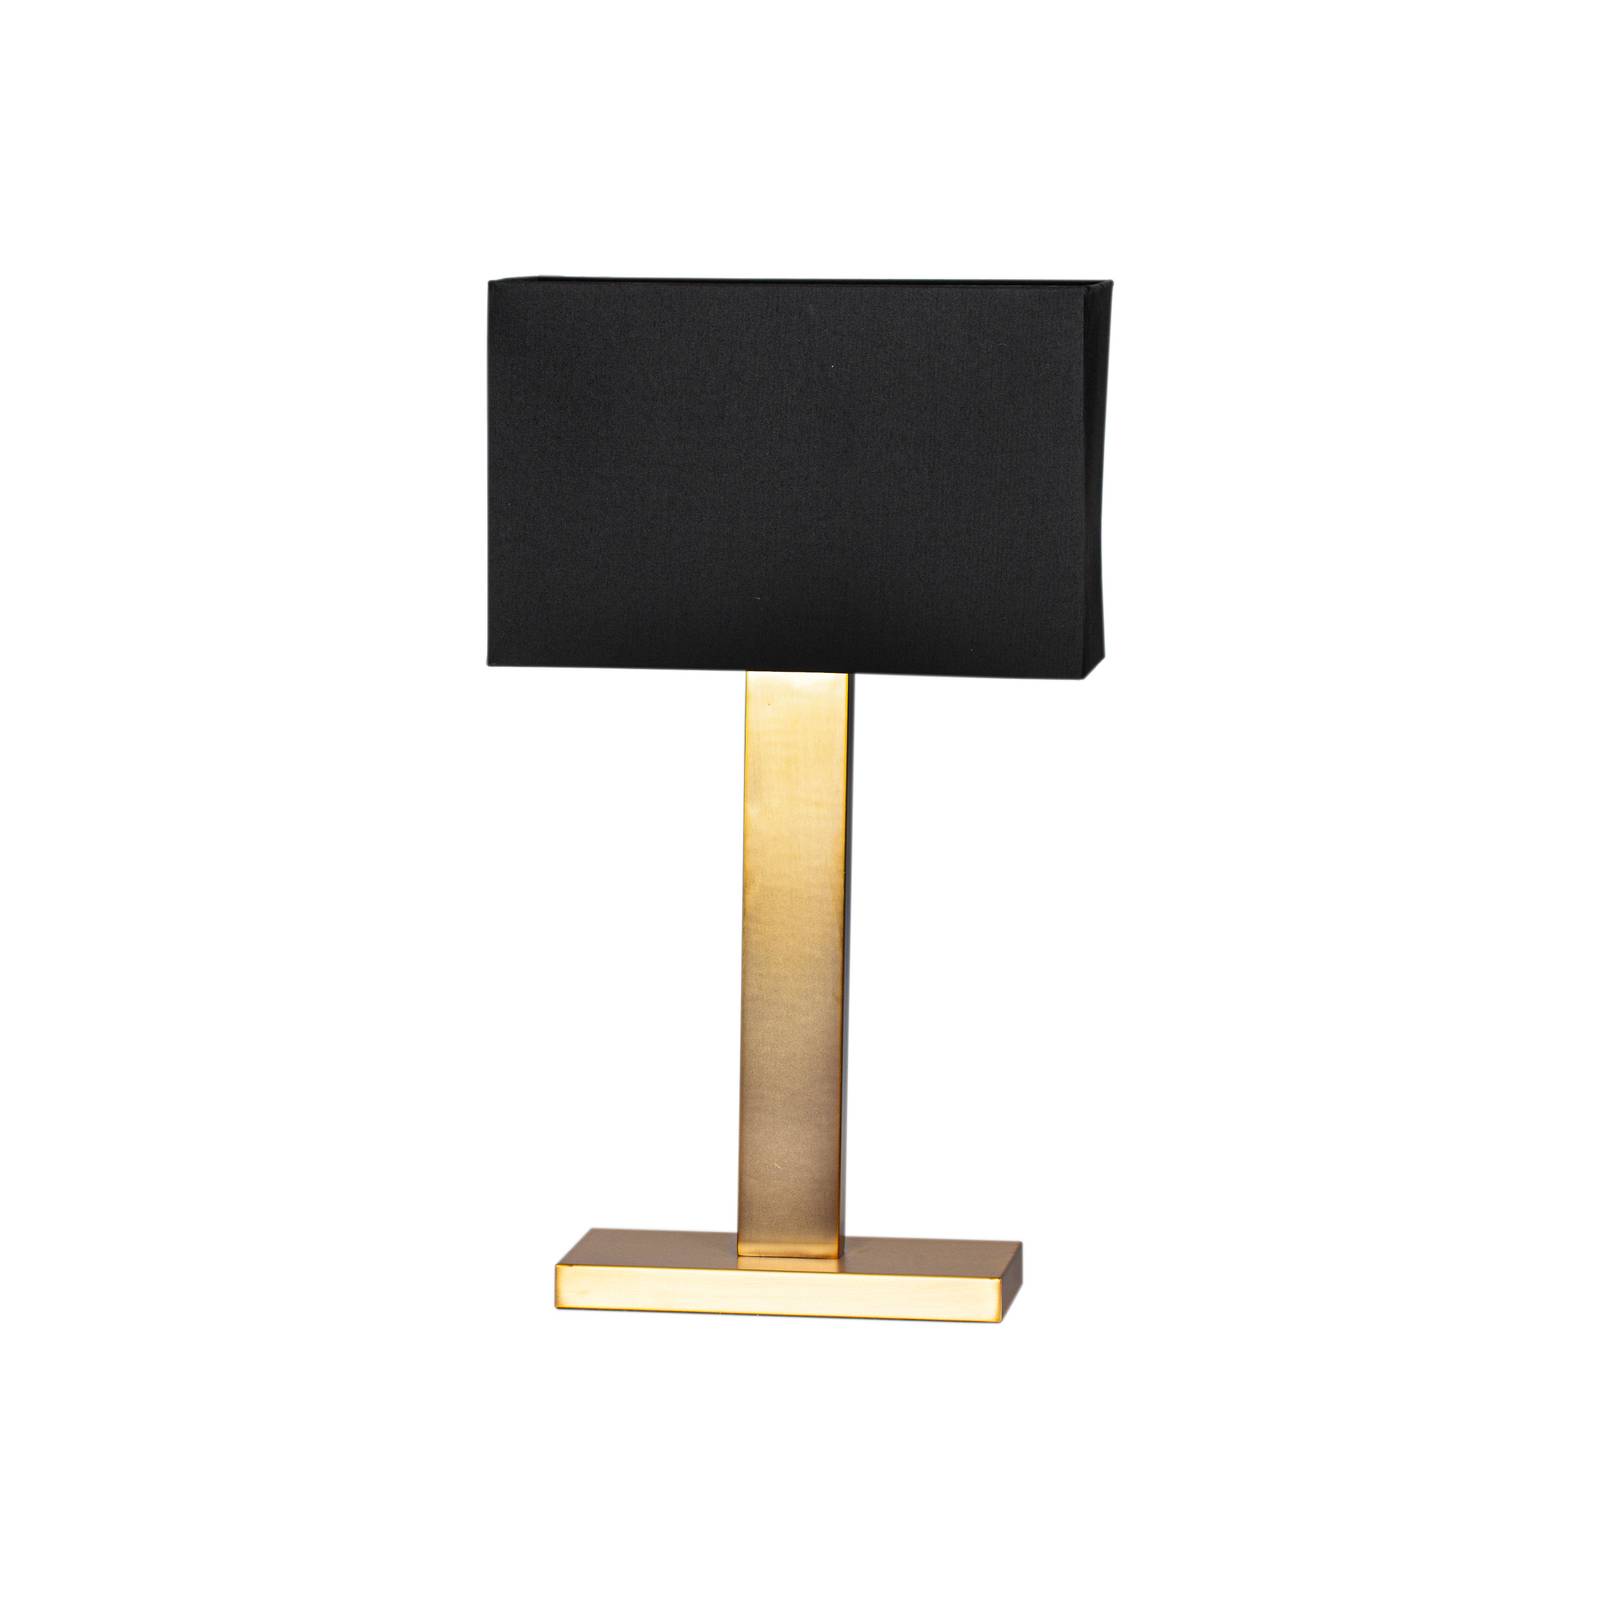 By Rydéns By Rydéns Prime stolní lampa výška 69 cm zlatá/černá